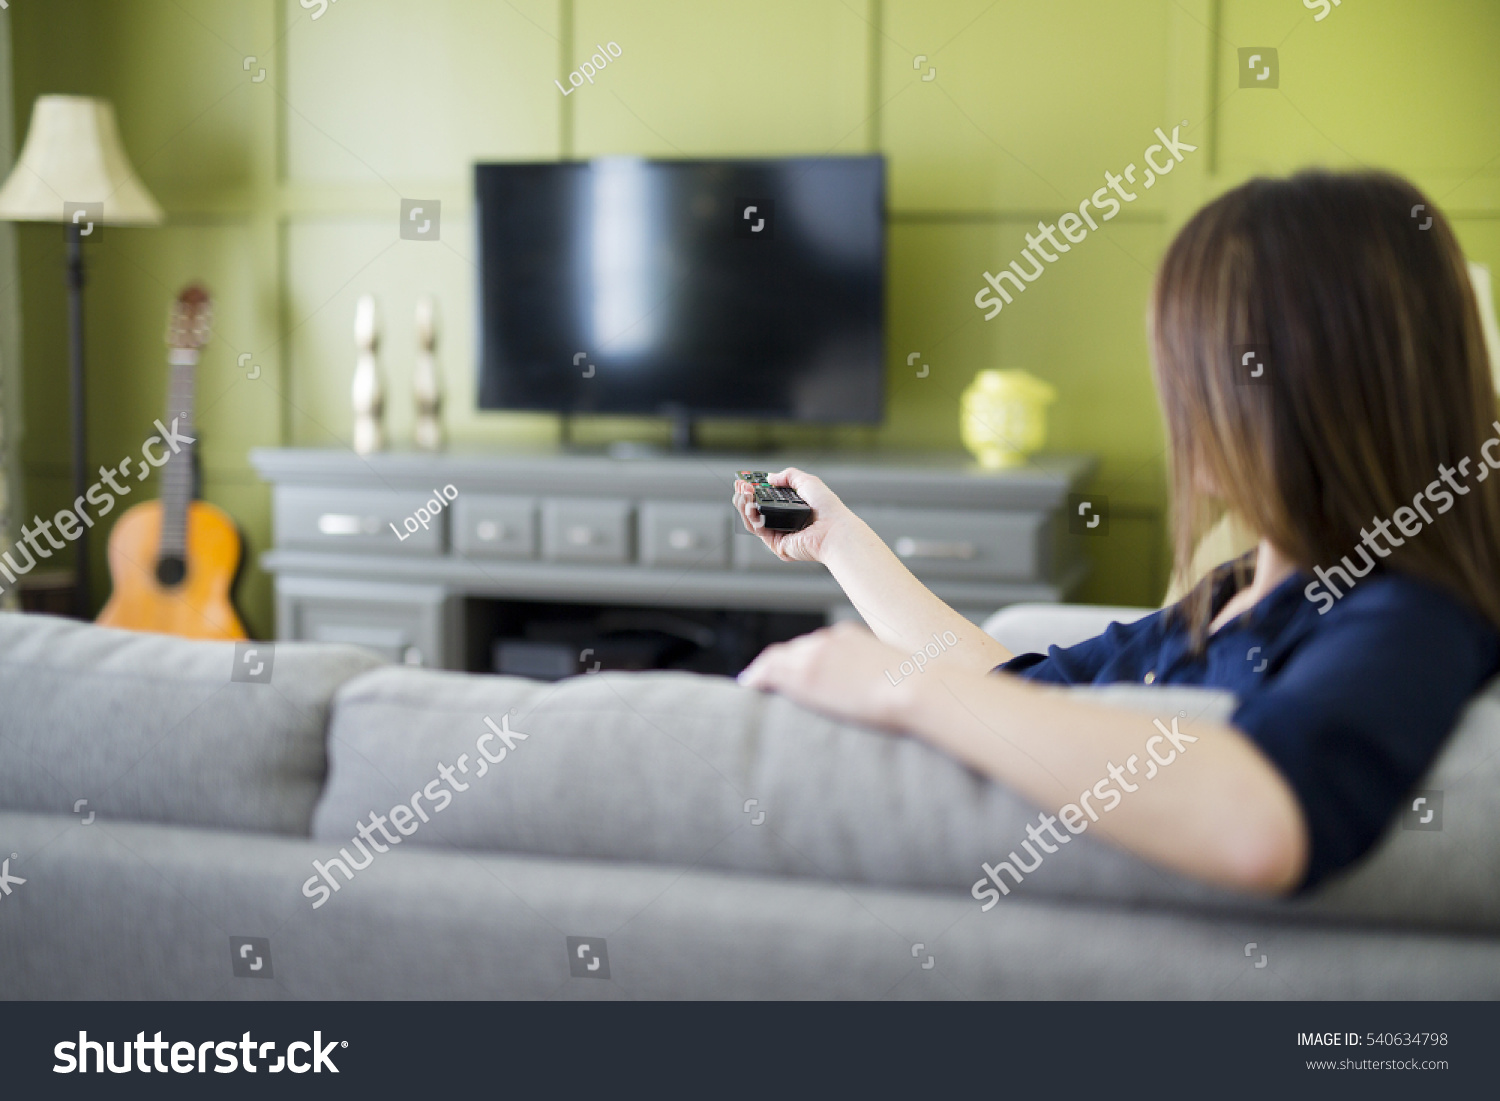 Телевизор сиди дома. Девушка смотрит телевизор. Девушка с пультом на диване. С пультом у телевизора девушка на диване. Девушка сидит на телевизоре.